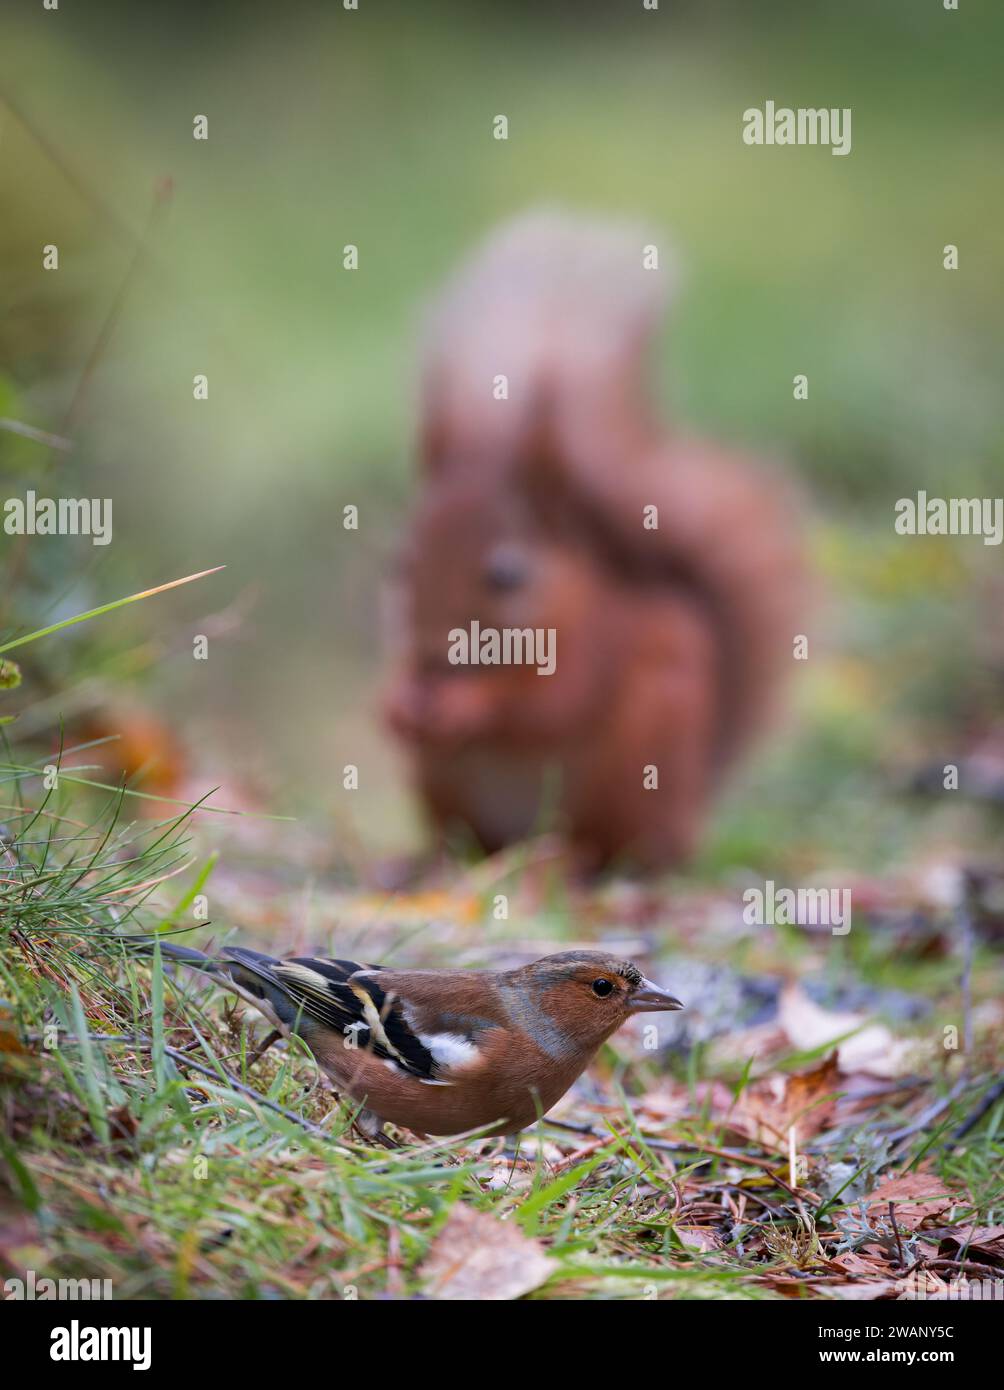 Chaffinch eurasien [ Fringilla coelebs ] oiseau mâle se nourrissant sur le sol avec l'écureuil rouge flou [ Sciurus vulgaris ] en arrière-plan Banque D'Images